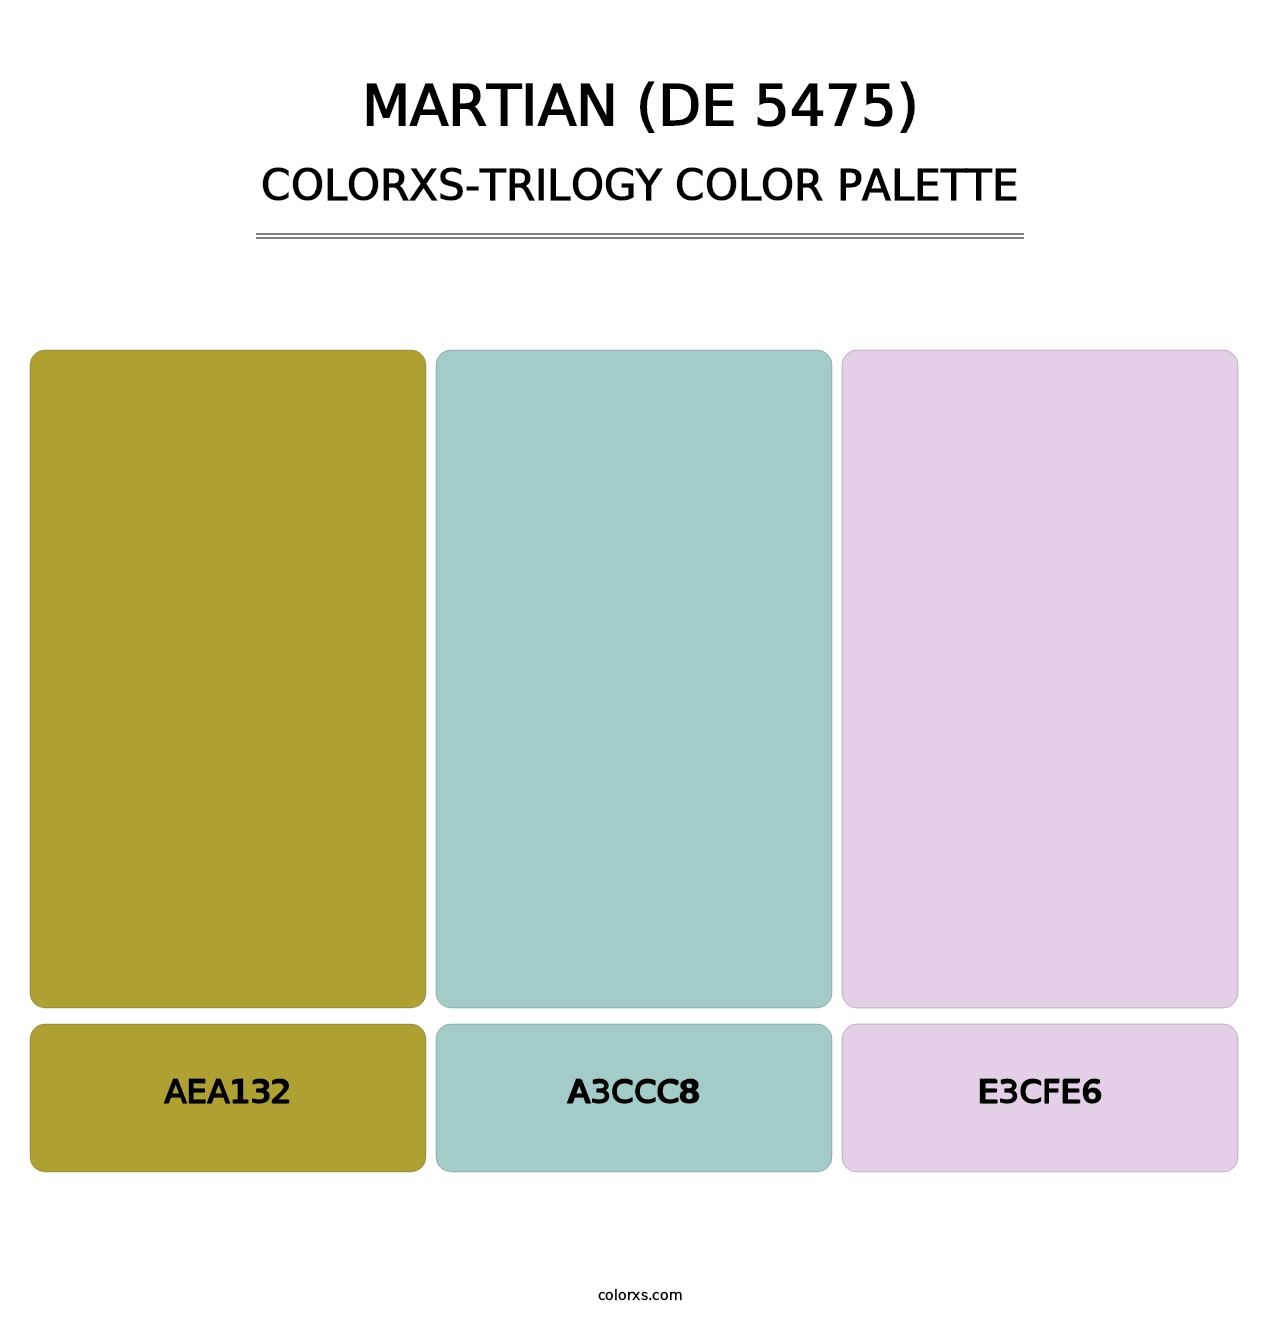 Martian (DE 5475) - Colorxs Trilogy Palette